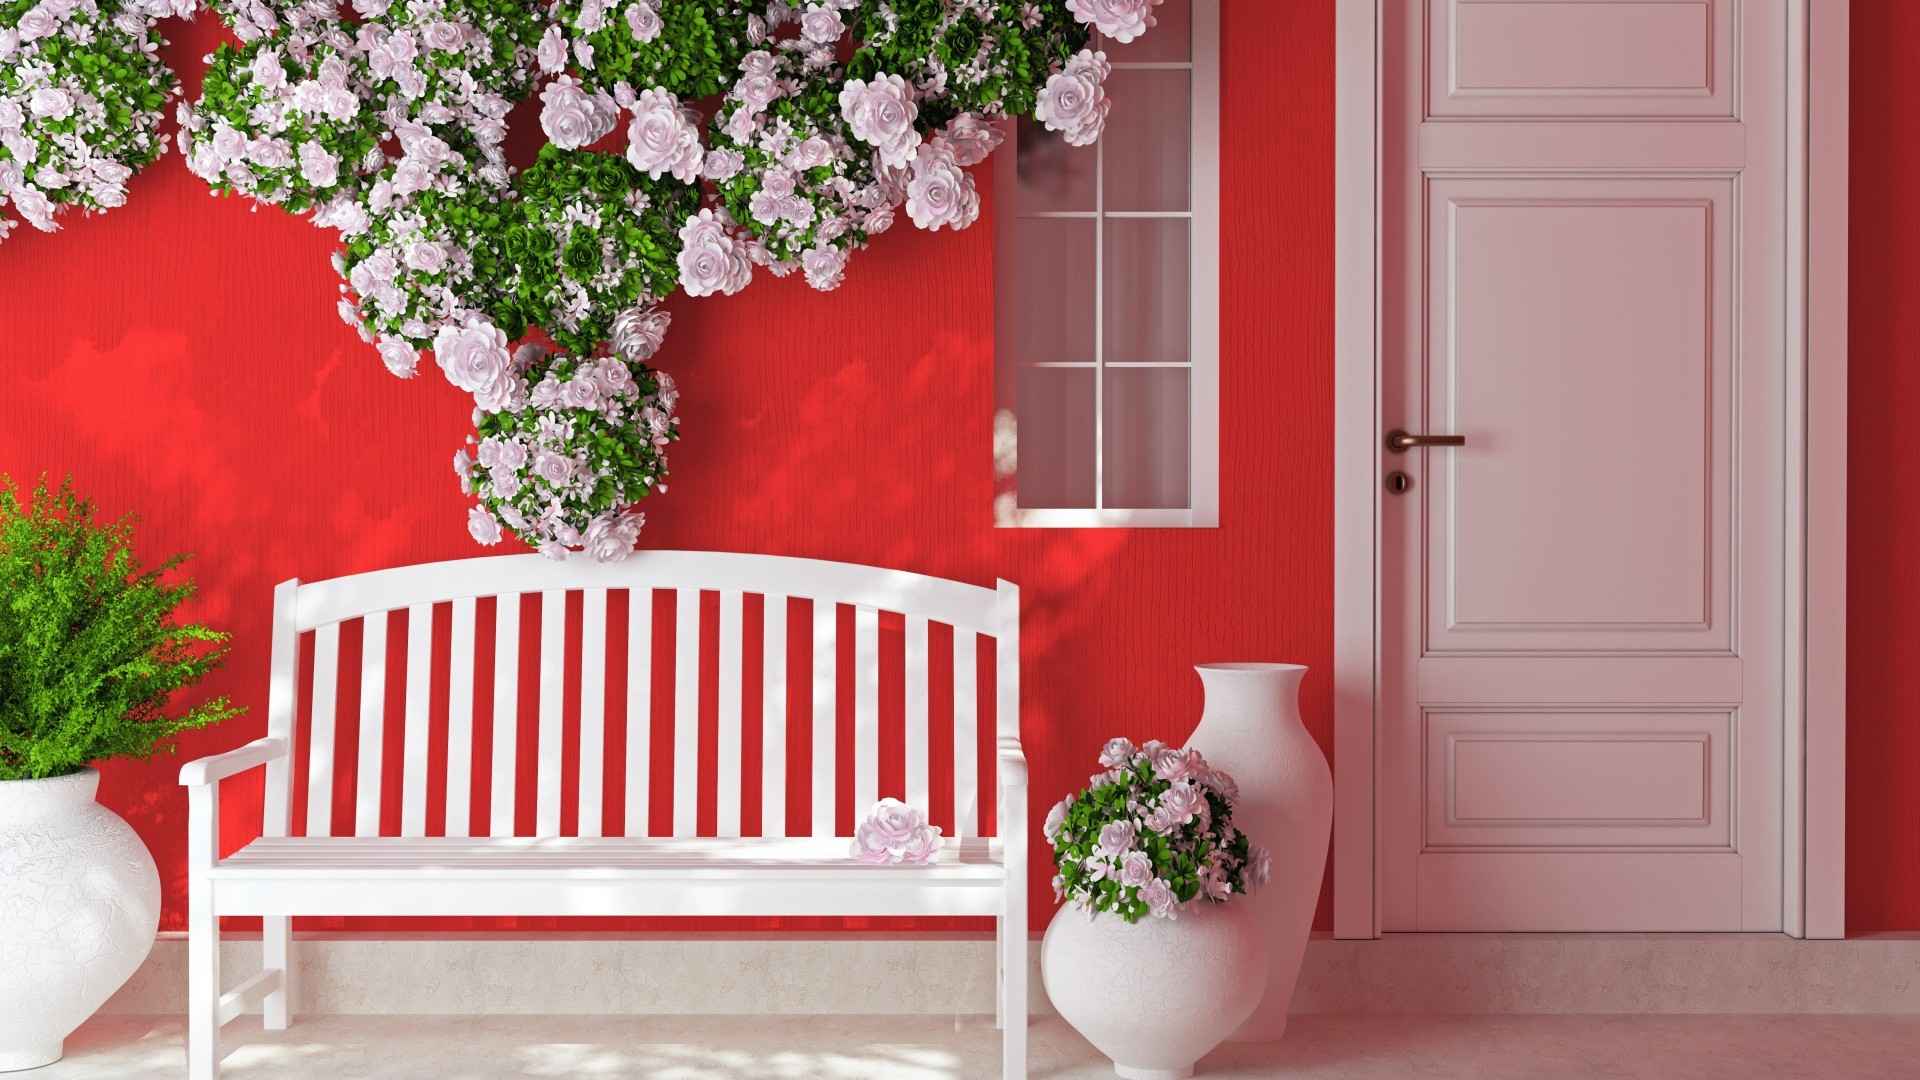 鲜花店粉色的墙浪漫温馨居家桌面壁纸